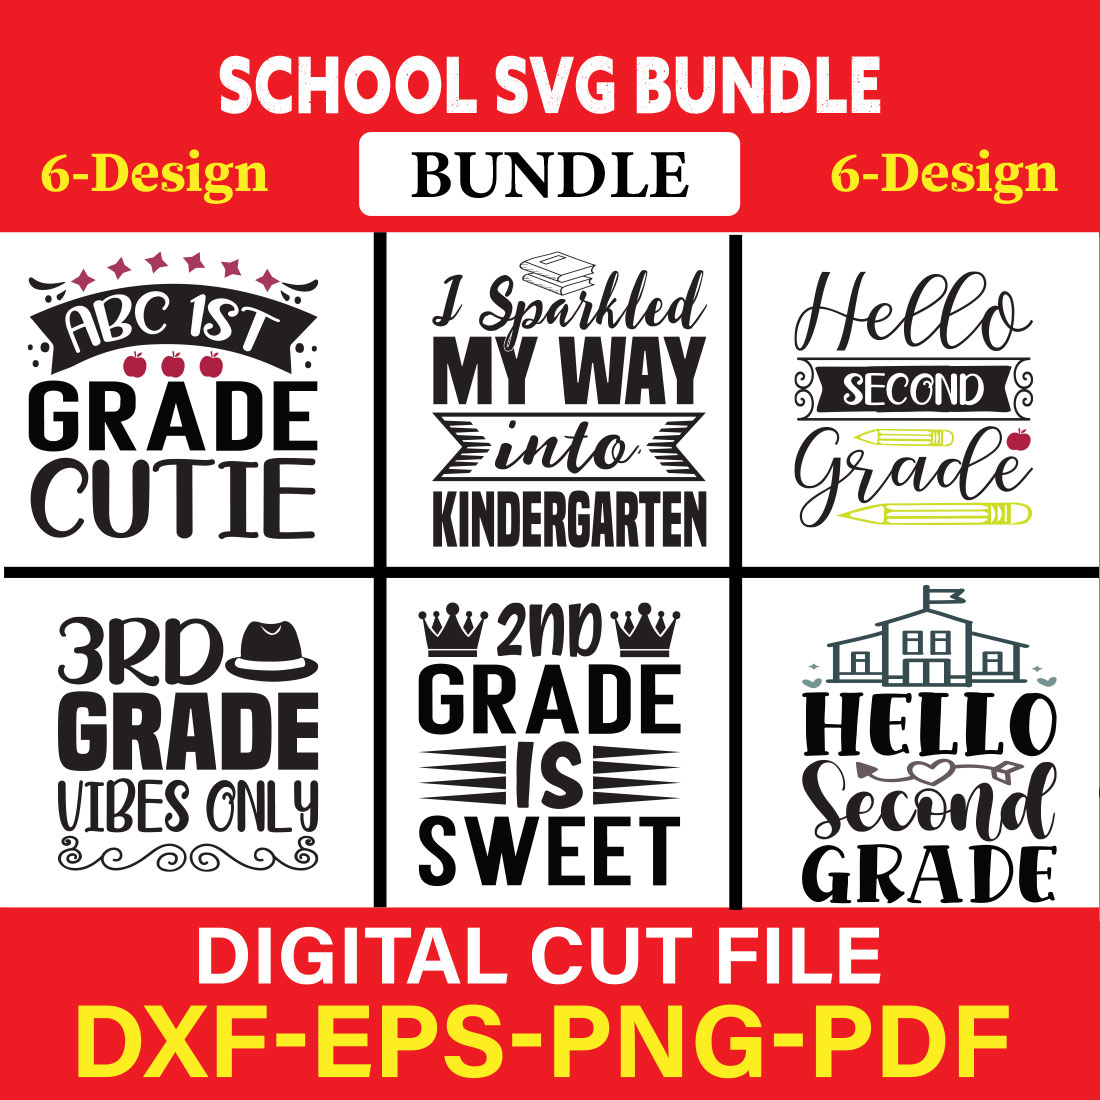 School svg bundle T-shirt Design Bundle Vol-12 cover image.